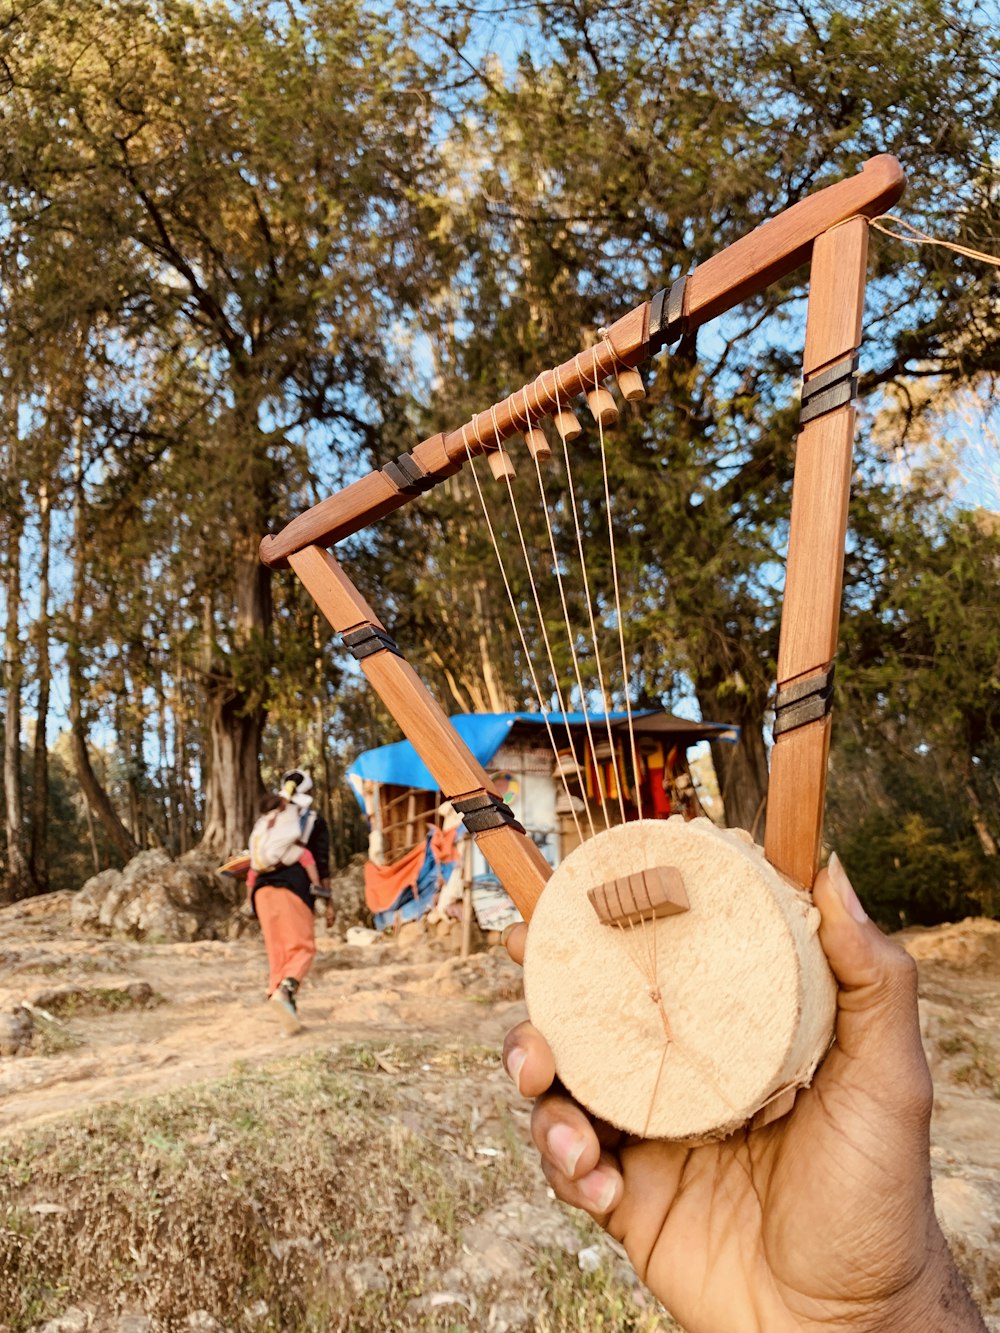 brown wooden string instrument